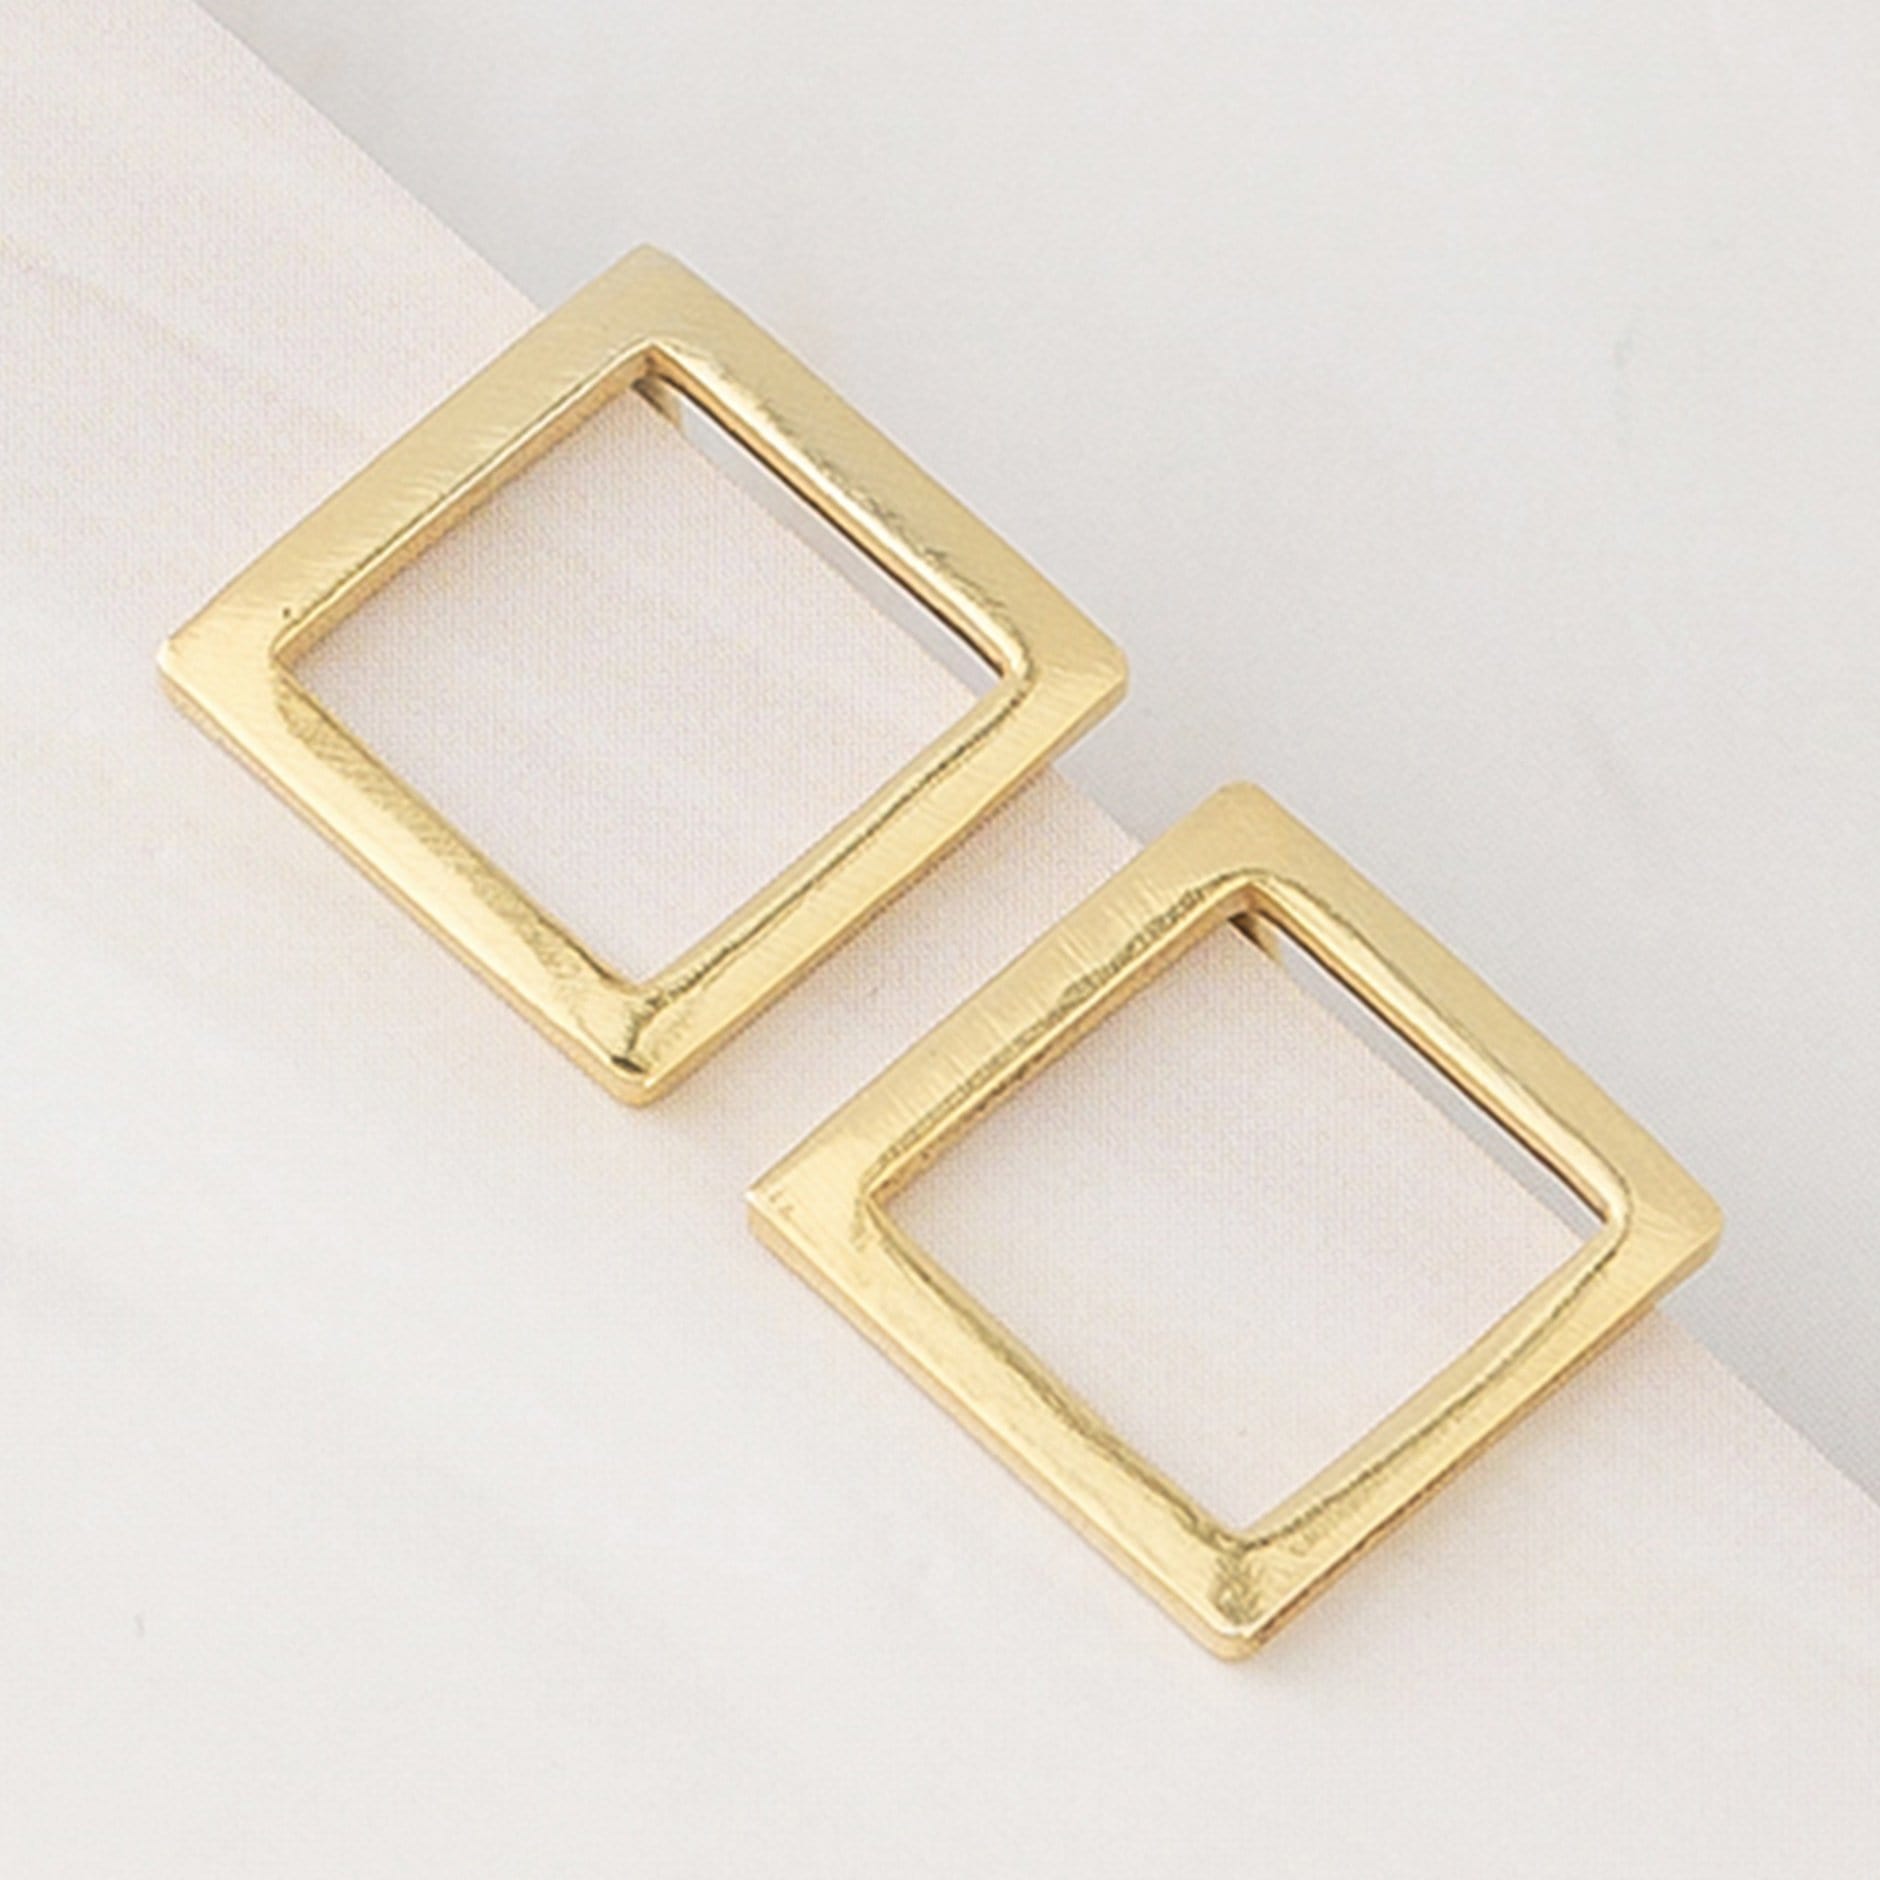 Emblem Jewelry Earrings Gold Tone Modern Geometry Diamond-Shape Stud Earrings